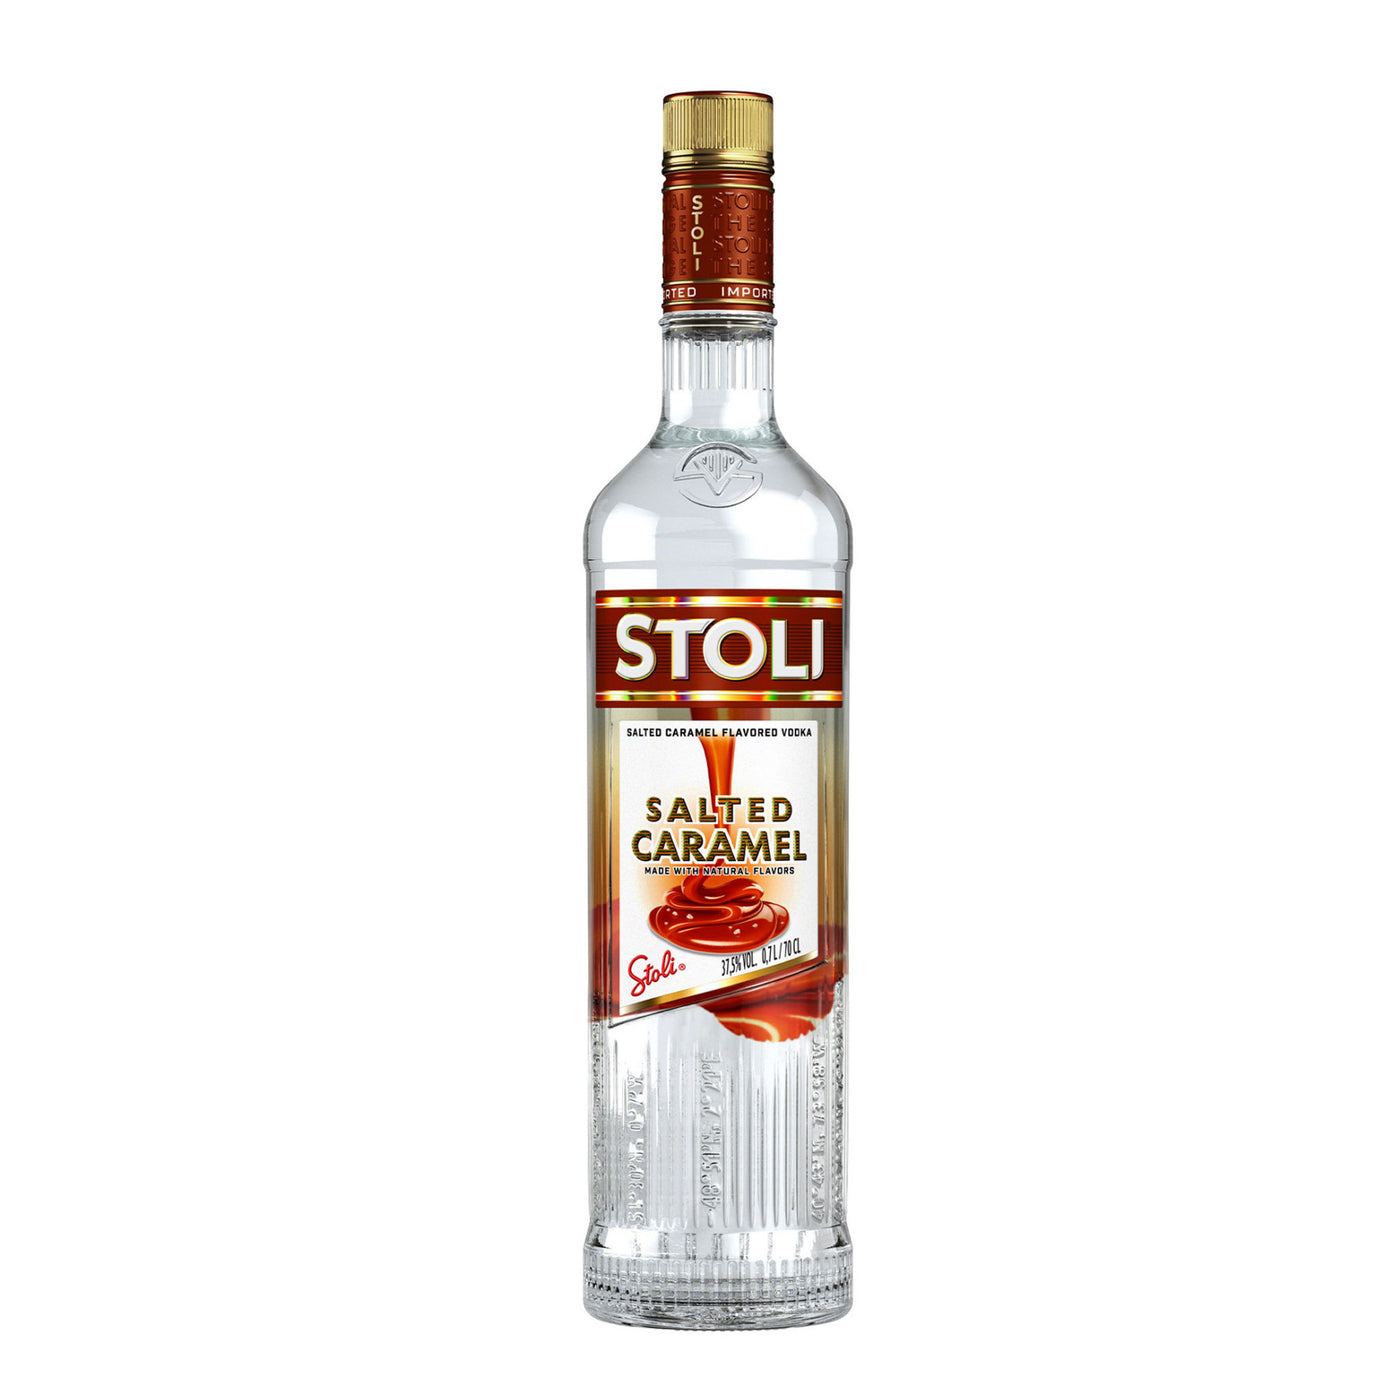 Stoli Salted Karamel Vodka - Spiritly